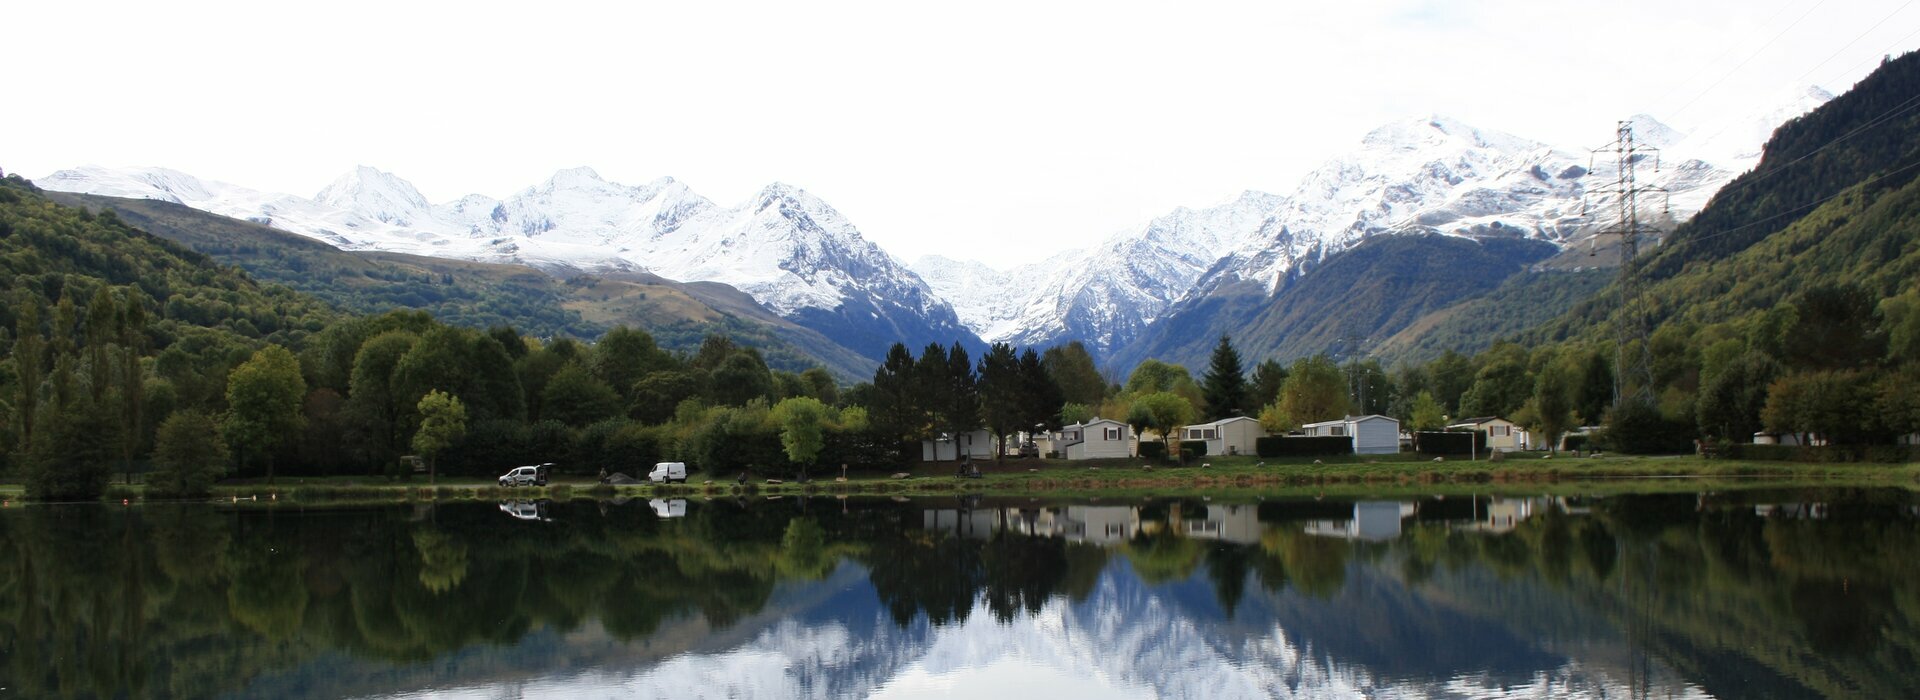 Camping d'Avajan dans les Hautes-Pyrénées